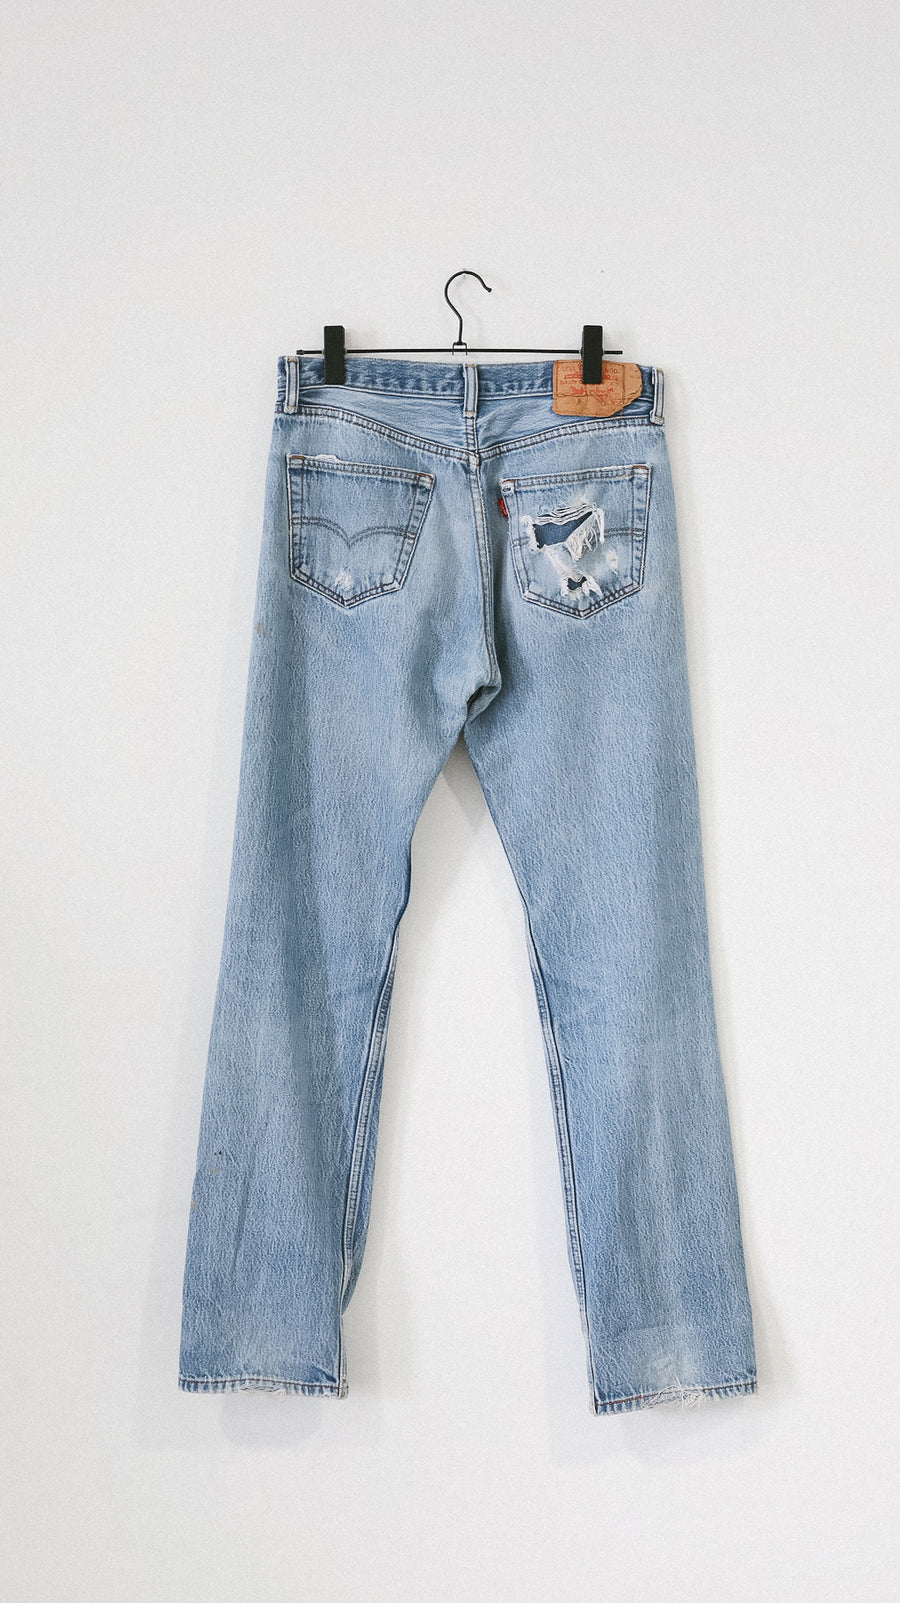 Levi's 501 Jeans by Luna B Vintage